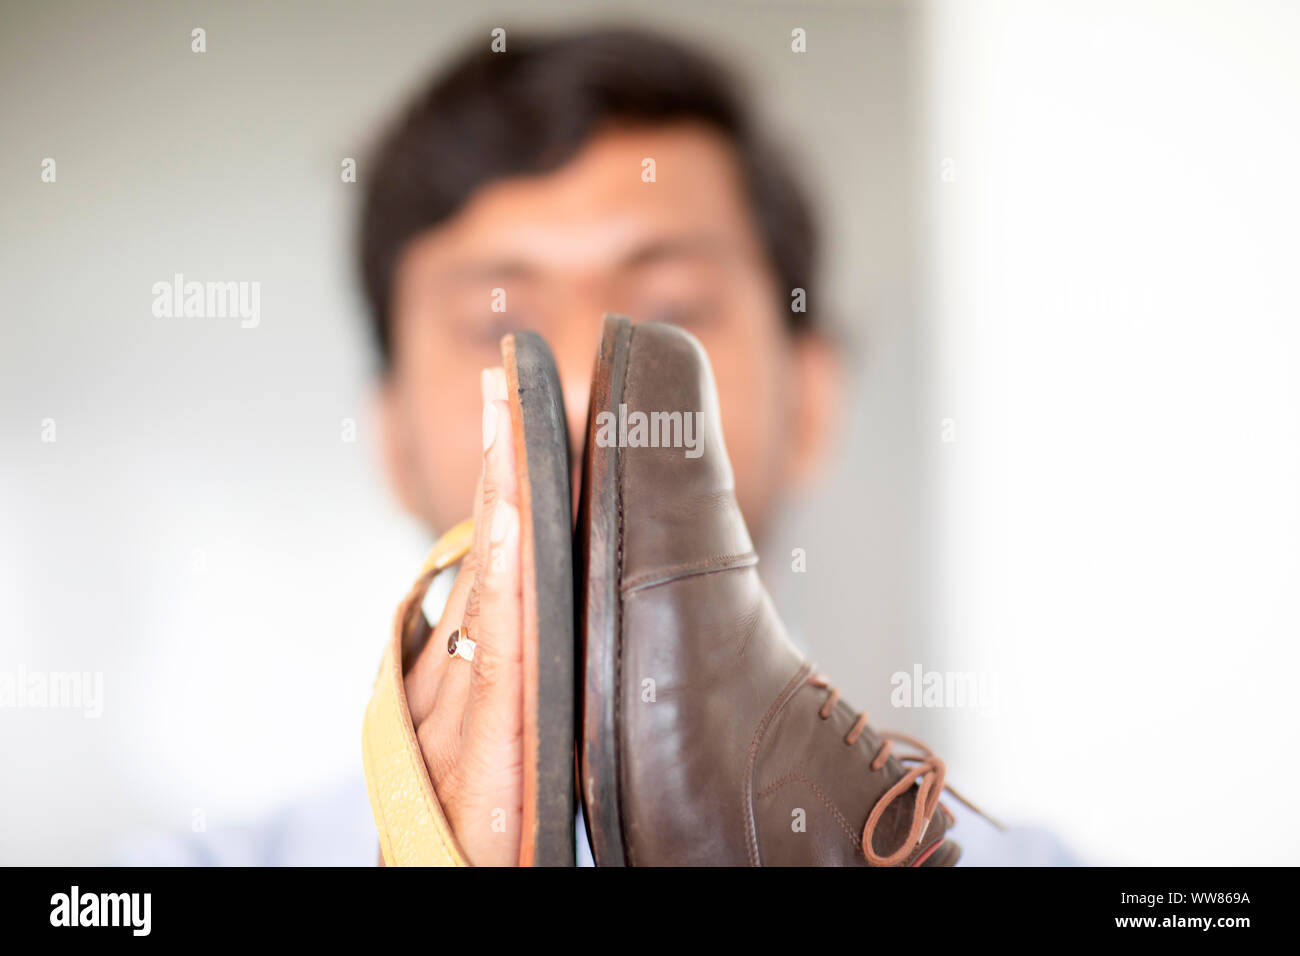 Sandale et chaussure dans les mains d'un jeune homme Banque D'Images